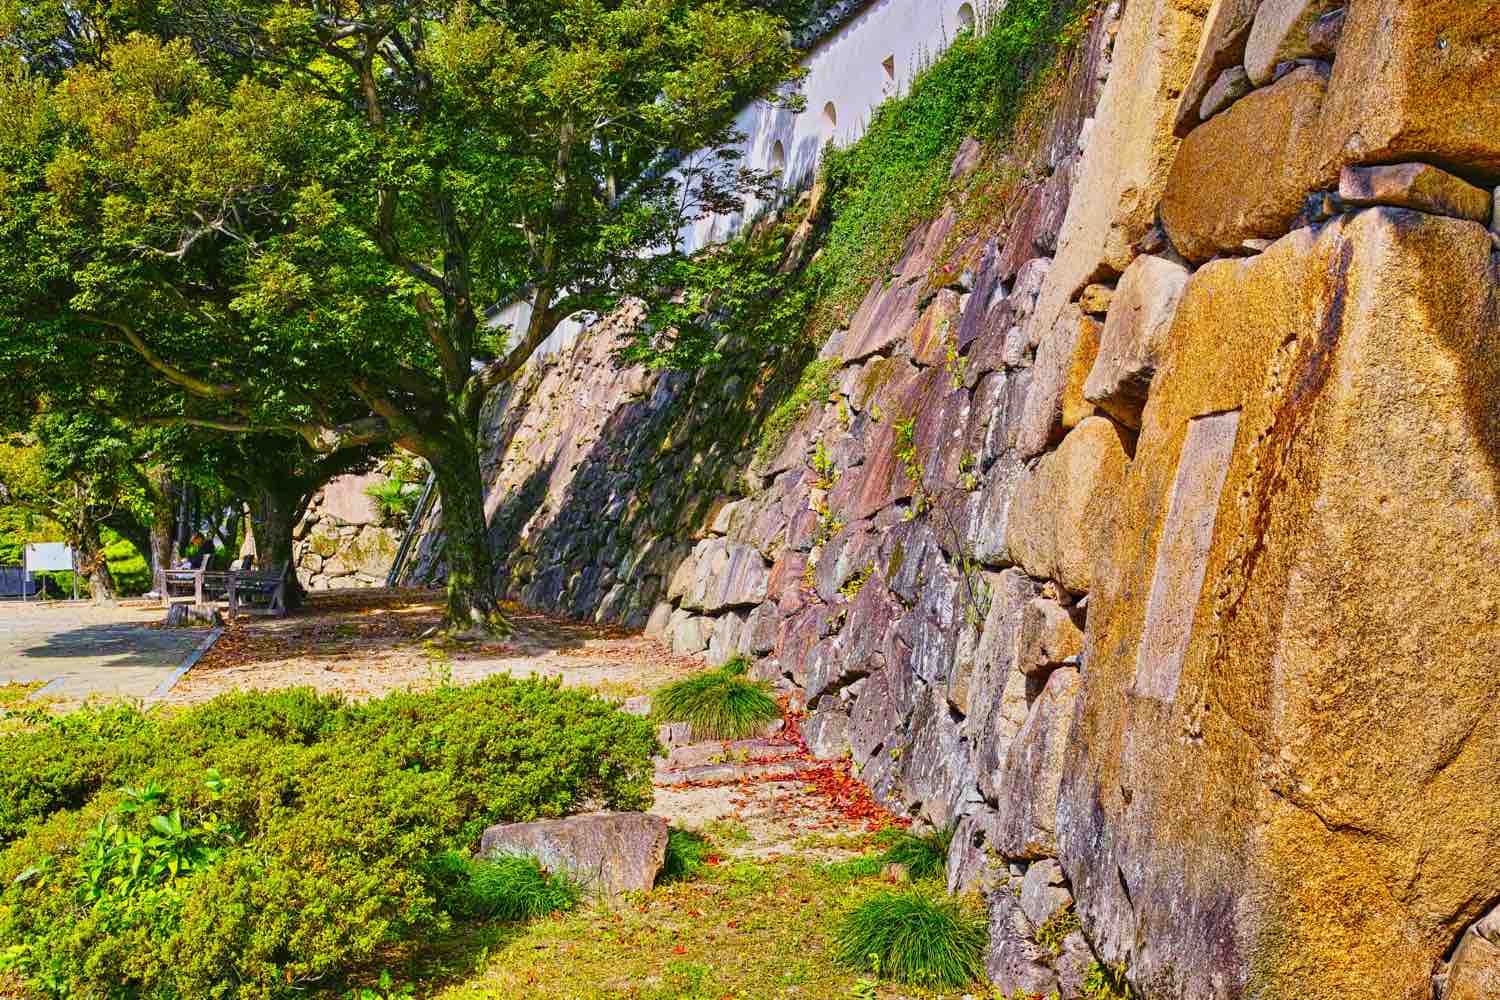 岡山城の石垣